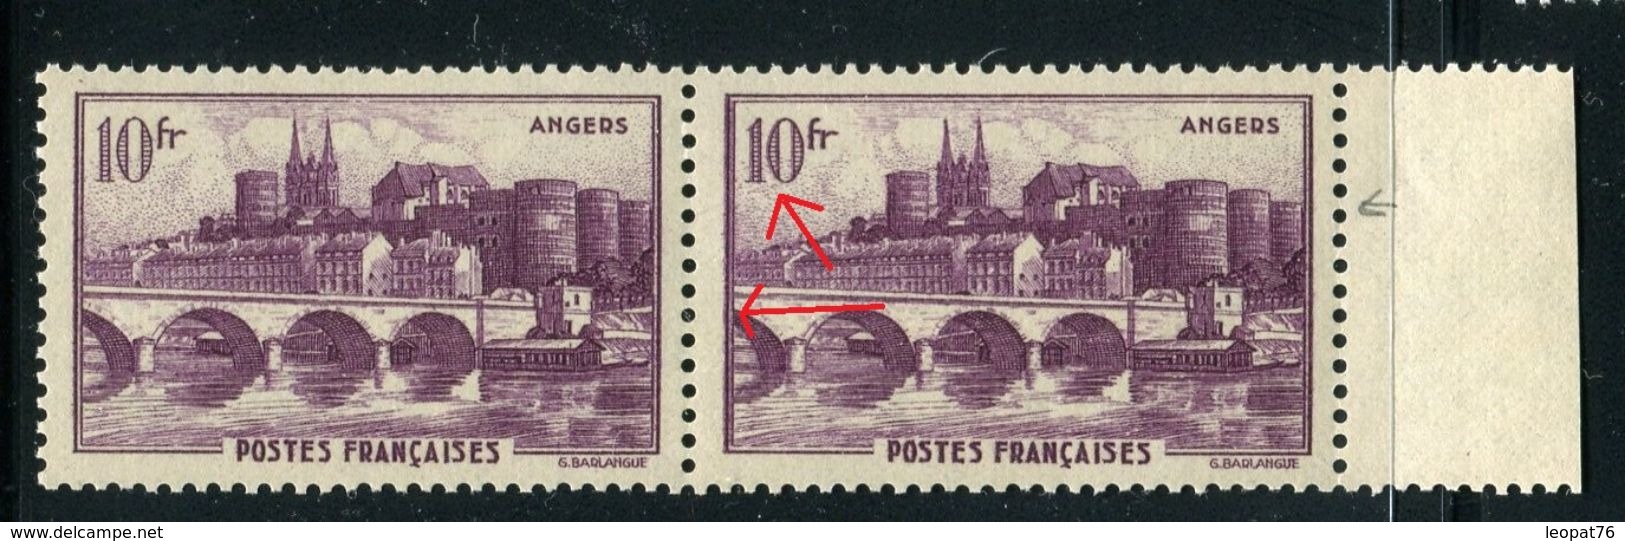 France - N° 500,1 Exemplaire Reentry Du Filet à Gauche Et Du Chiffre 1 Tenant à Exemplaire Normal Neufs Luxe - Ref V411 - Unused Stamps